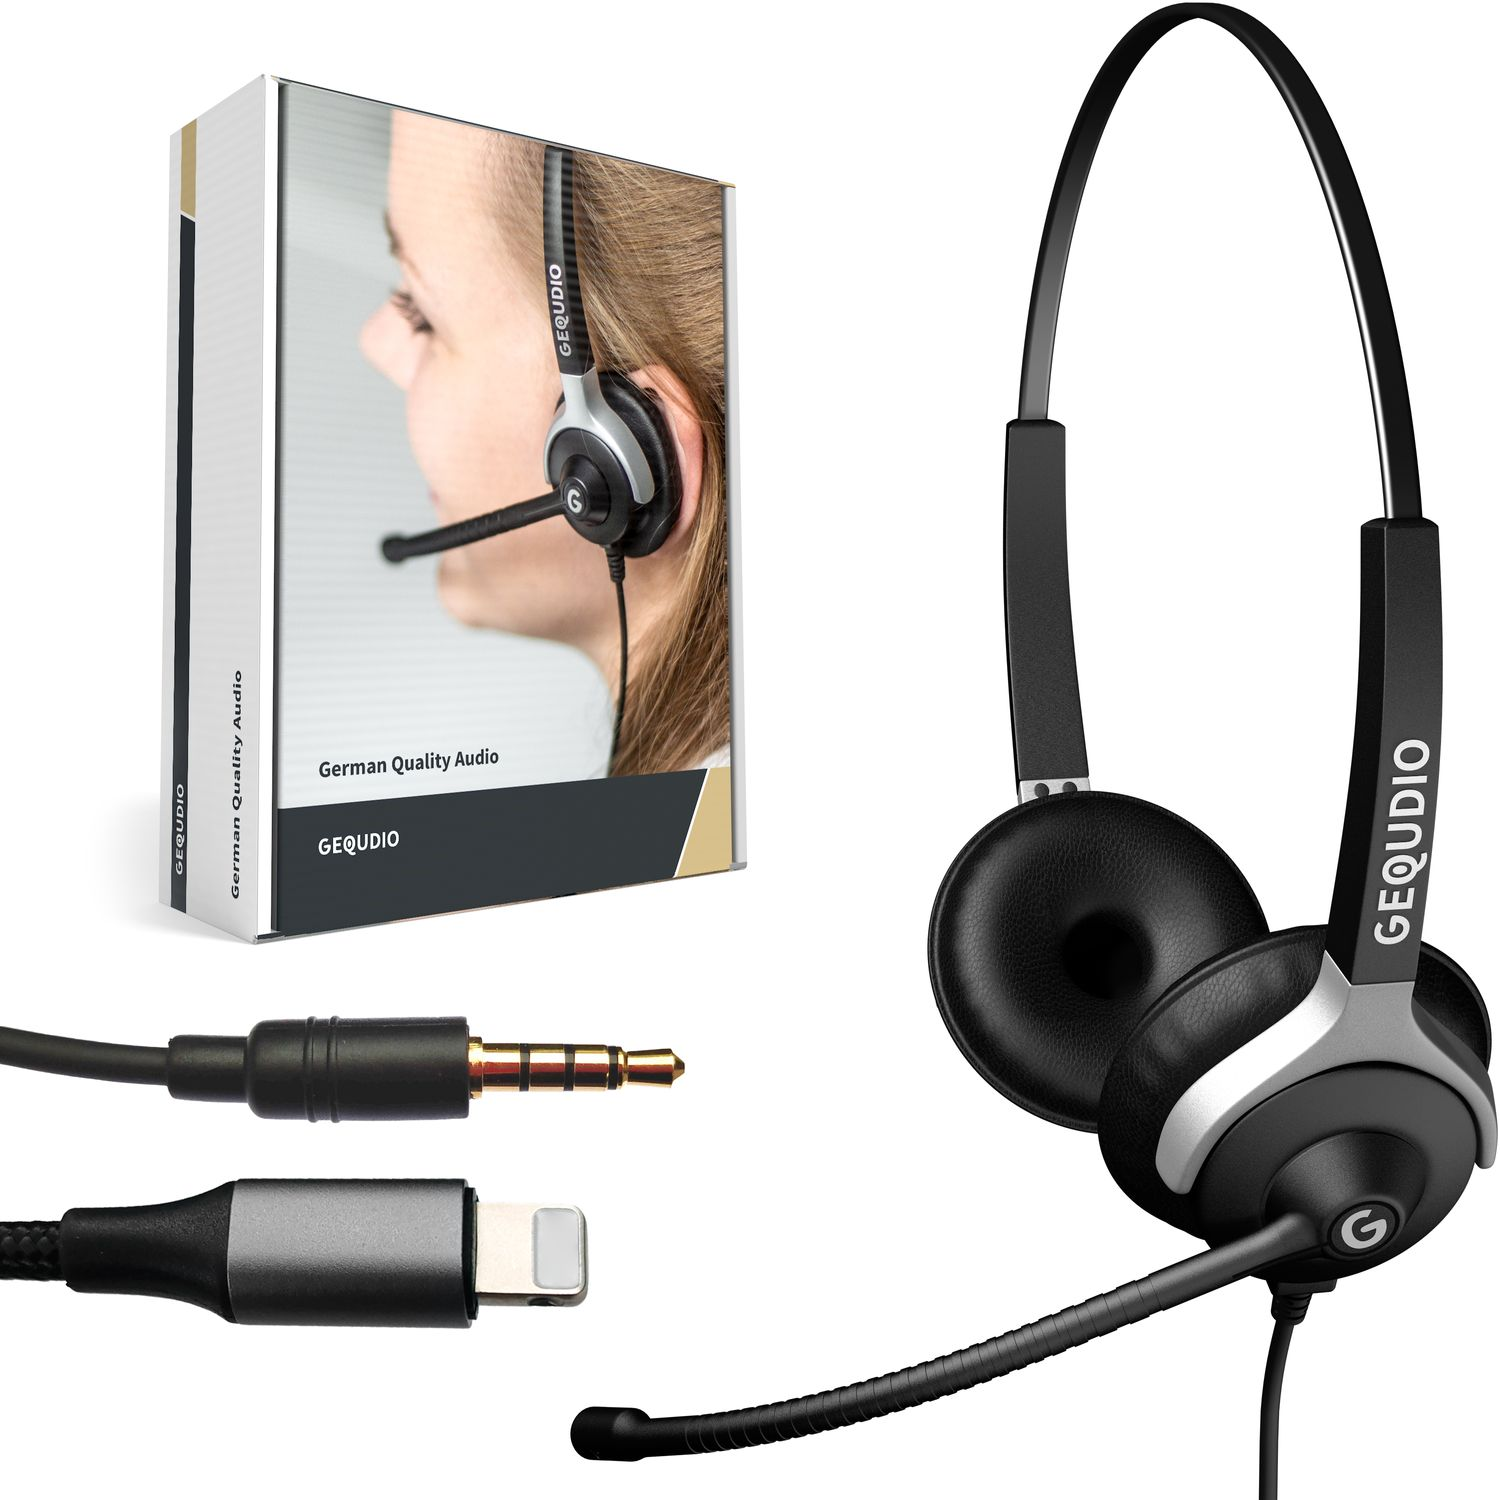 Headset Klinke On-ear 3,5mm Schwarz Headset Lightning-Adapter, GEQUDIO mit 2-Ohr und